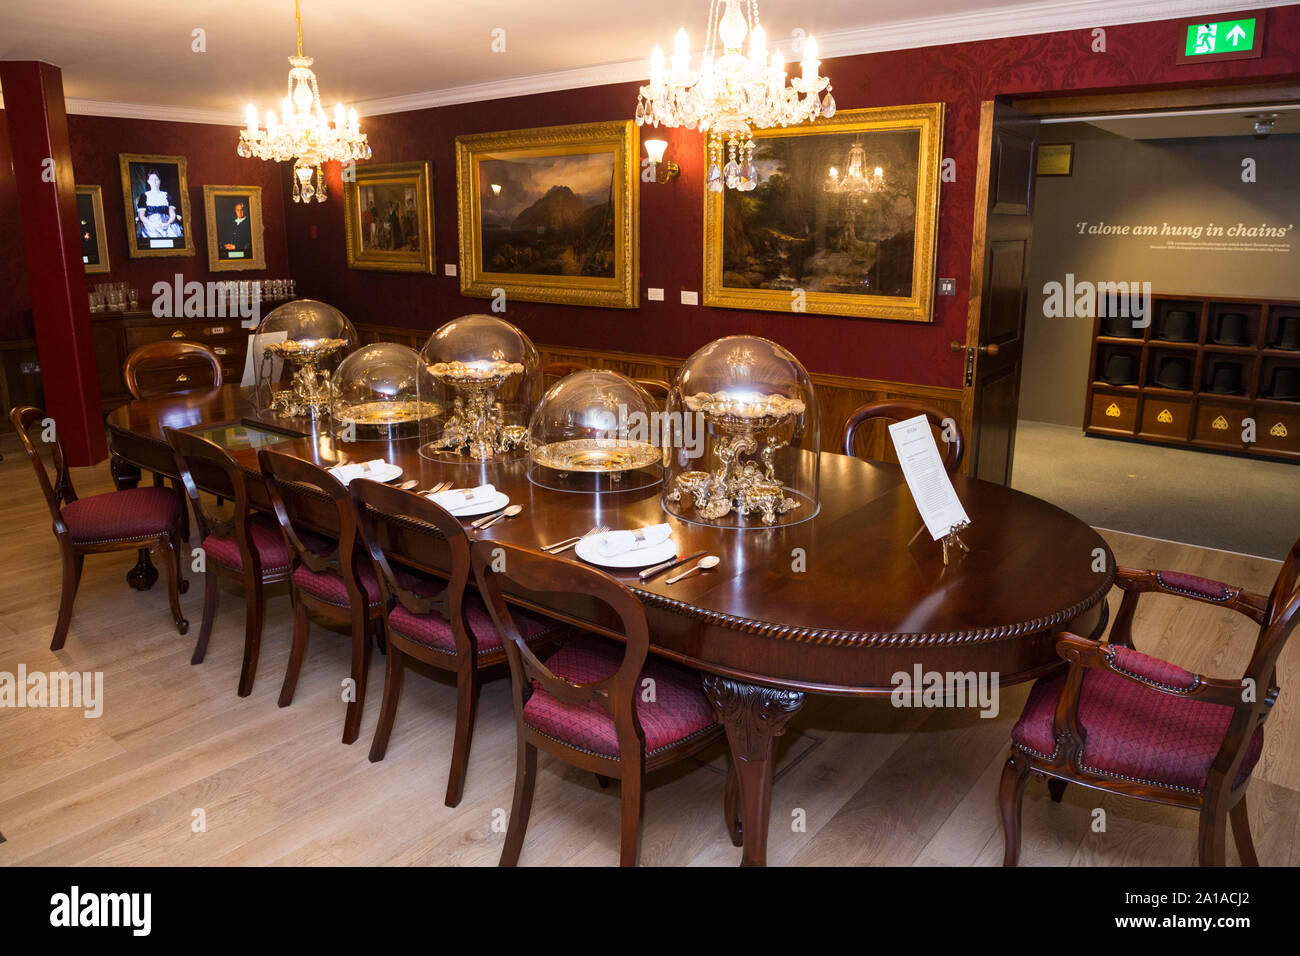 Il display mostra / ricreazione del 17 Duke Street, Westminster, London (Brunel londinese di base) tavolo da pranzo e soggiorno scena, visualizzato a essendo Brunel, in Bristol, alla darsena visualizzando la SS Gran Bretagna nave. Regno Unito (109) Foto Stock